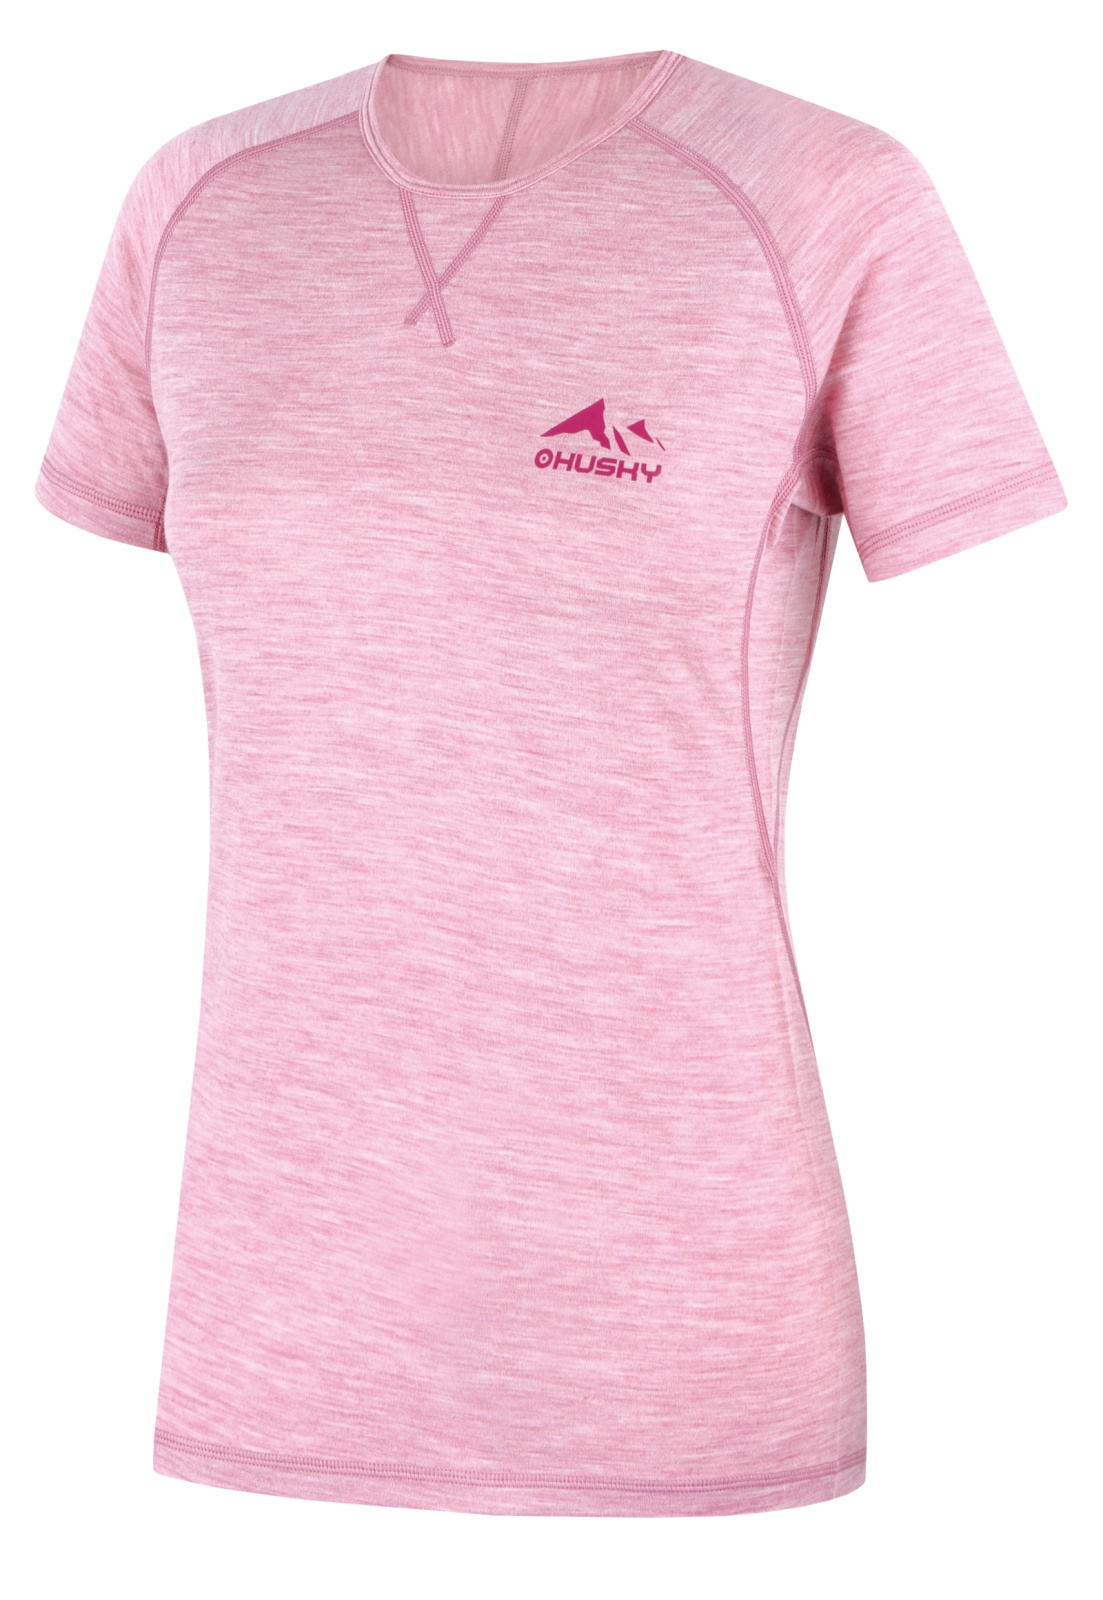 Husky Merino termoprádlo Mersa L faded pink Velikost: L dámské tričko s krátkým rukávem